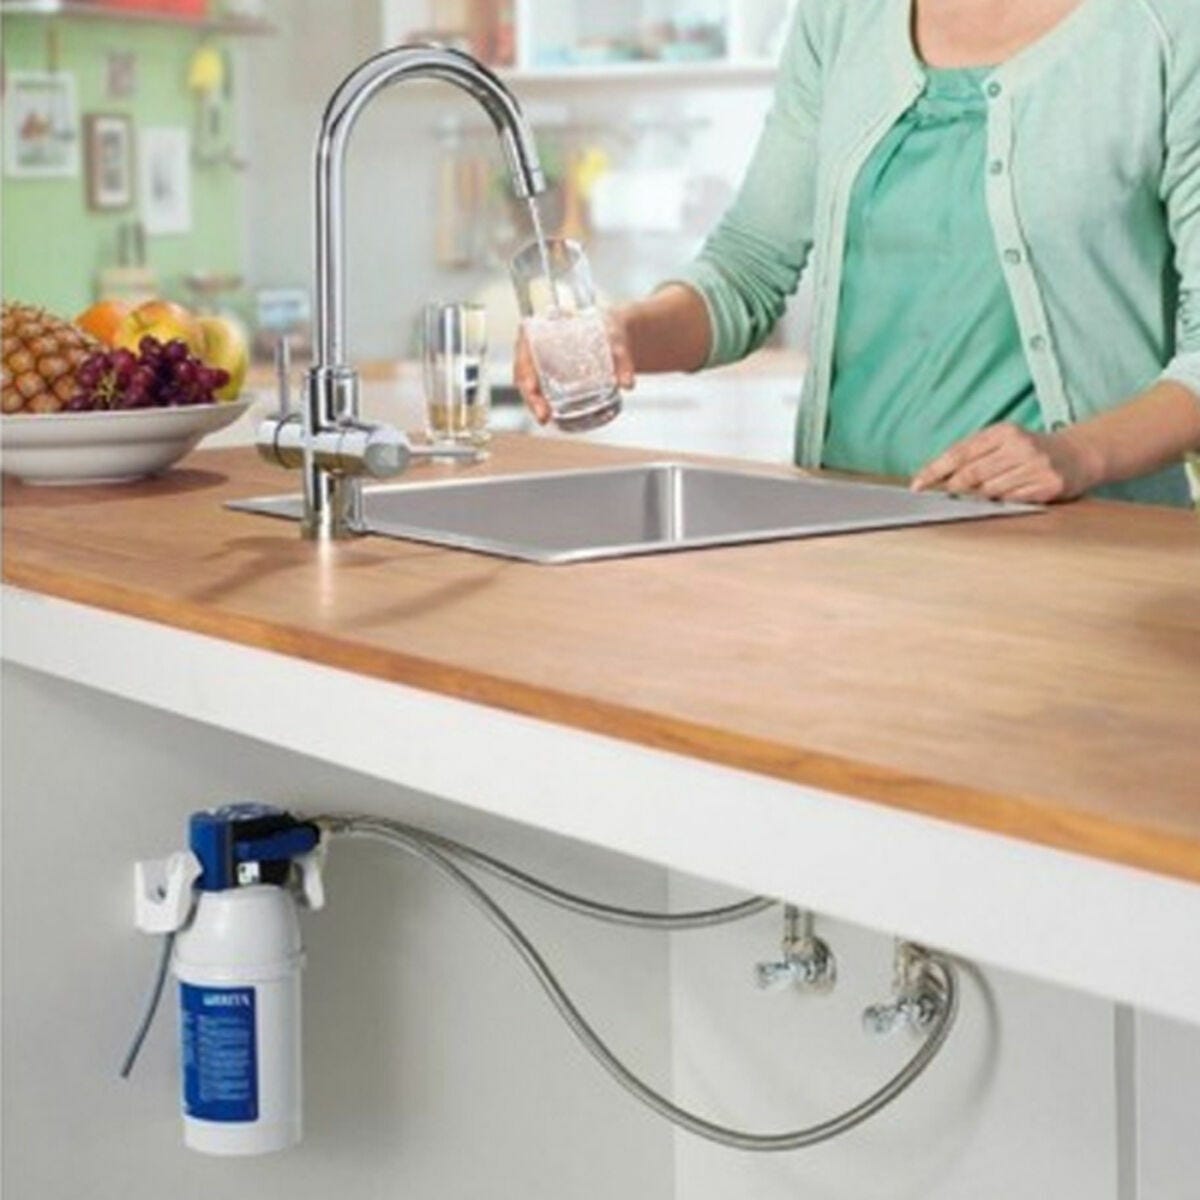 Filtre pour robinet (16-19mm) plastique - prix en FCFA